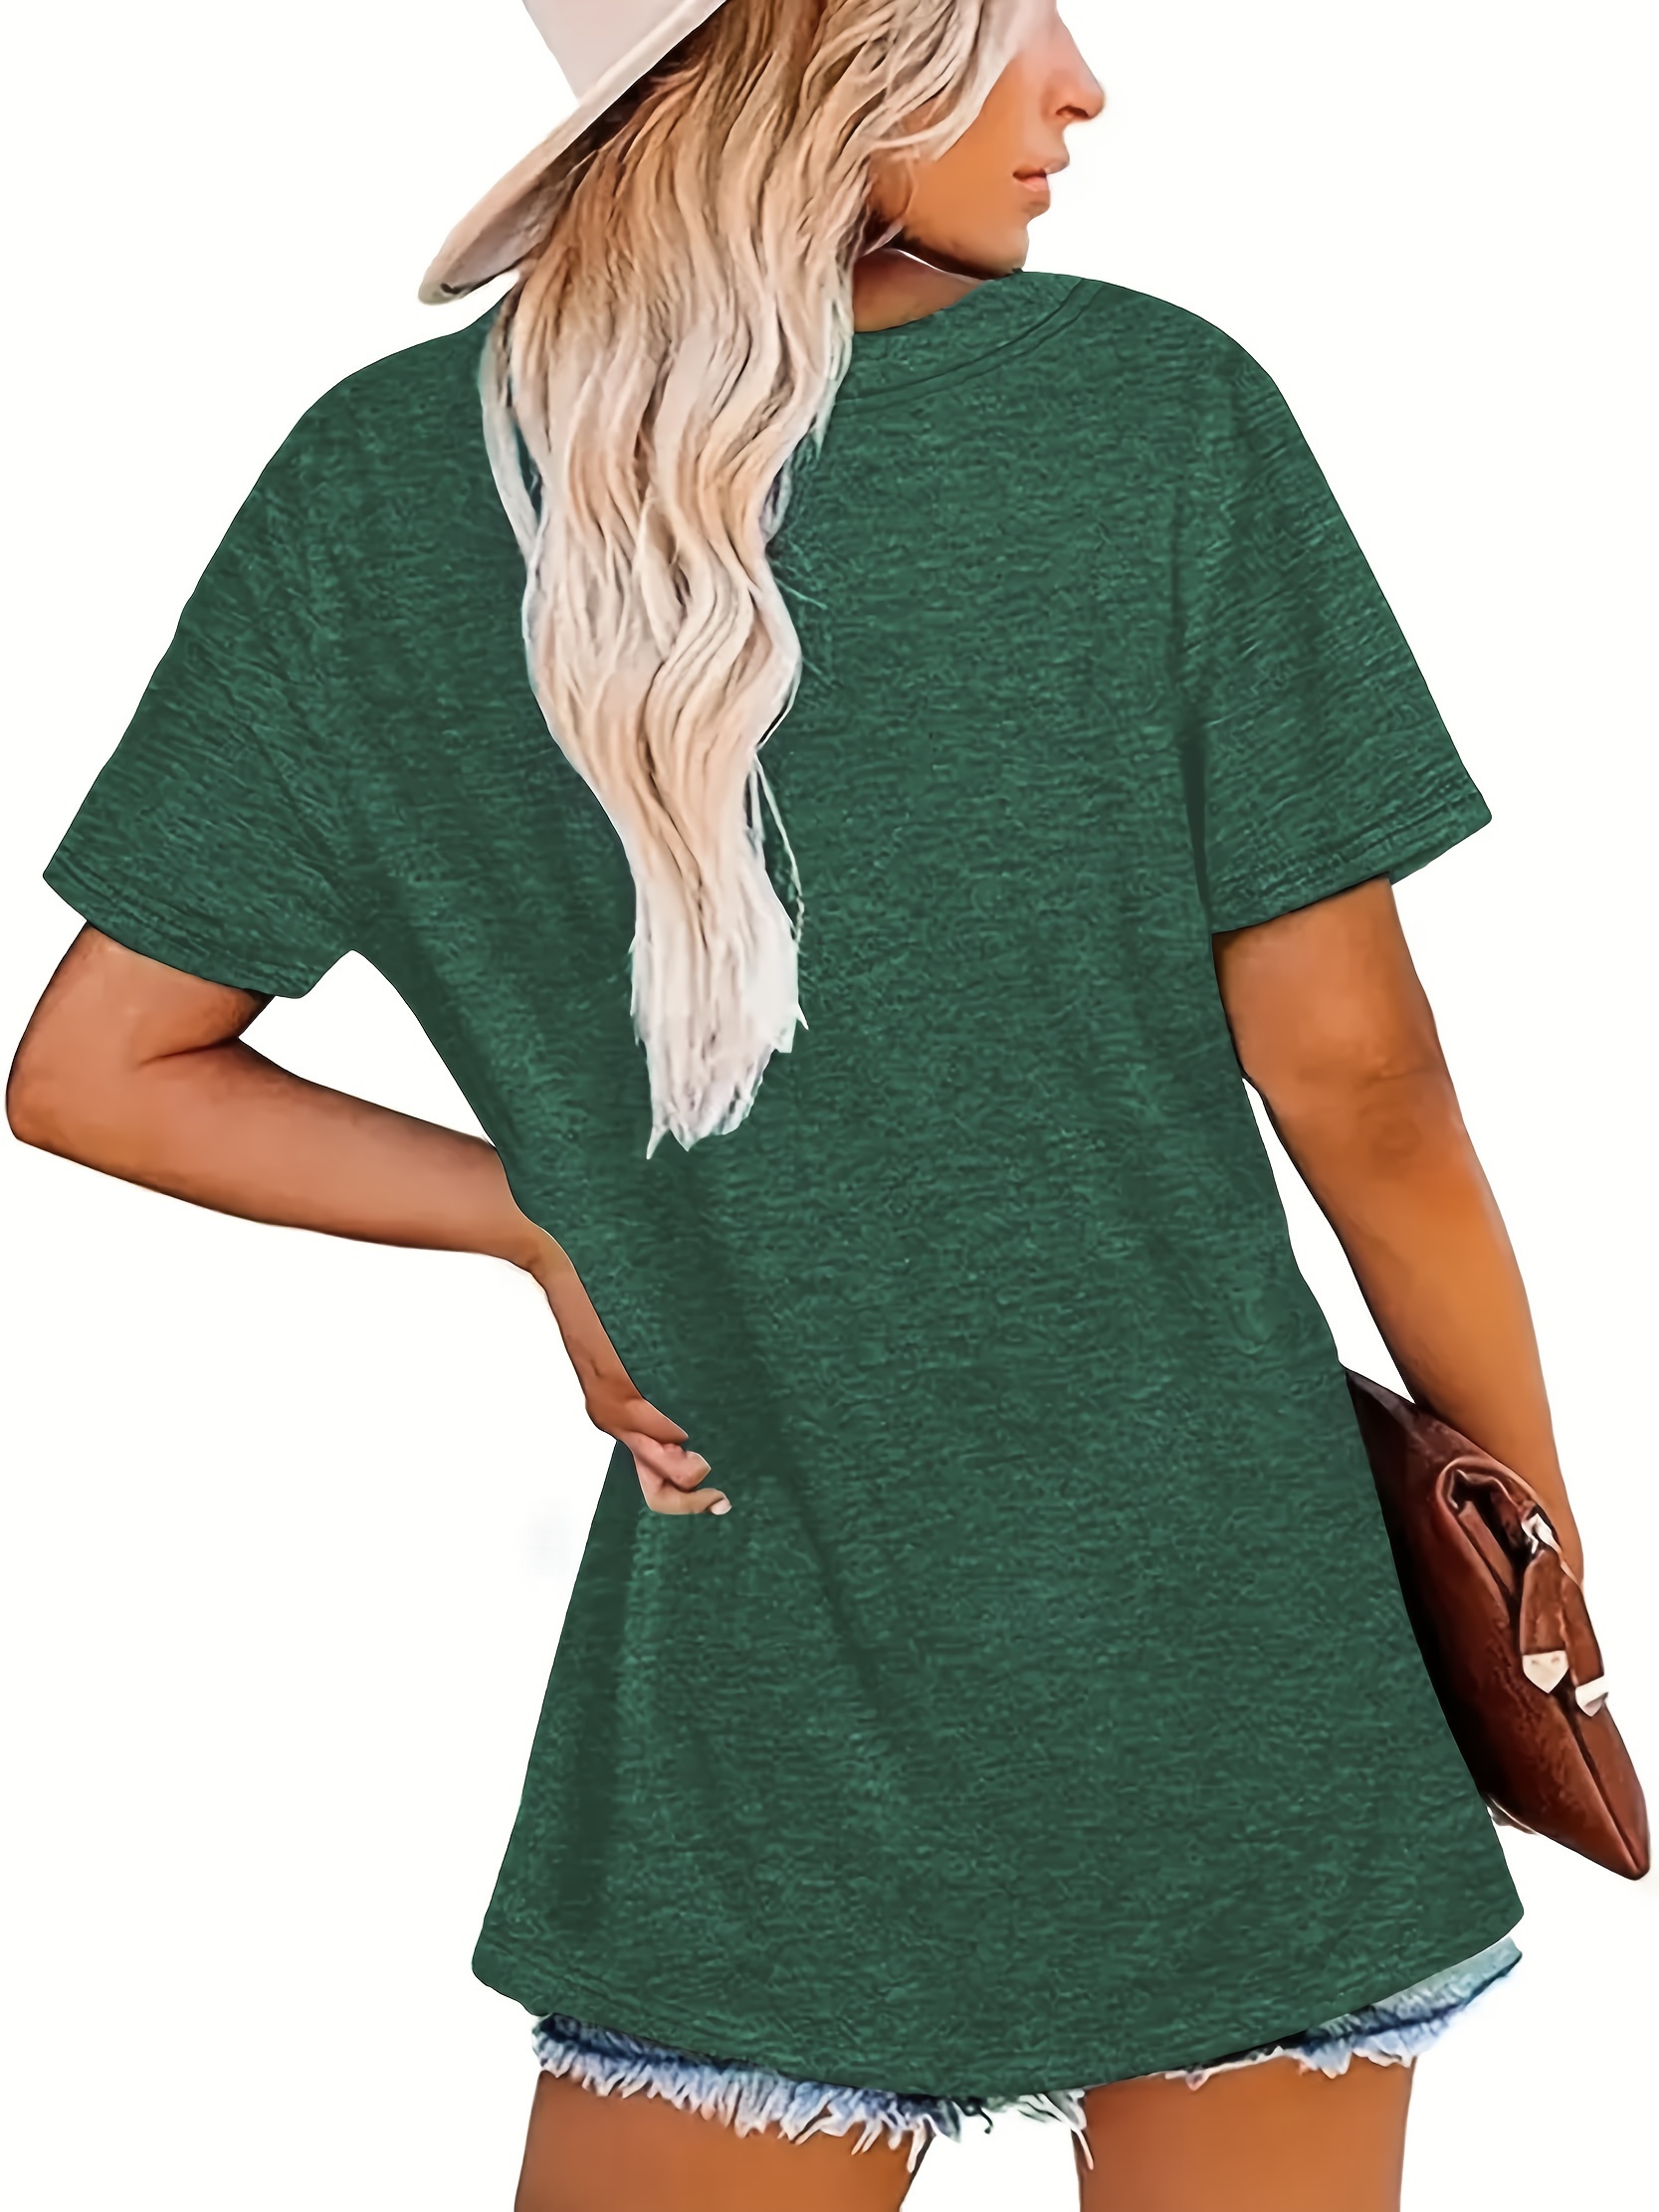 Lucky Brand Women's The Summer T-Shirt Dress Green Size Small